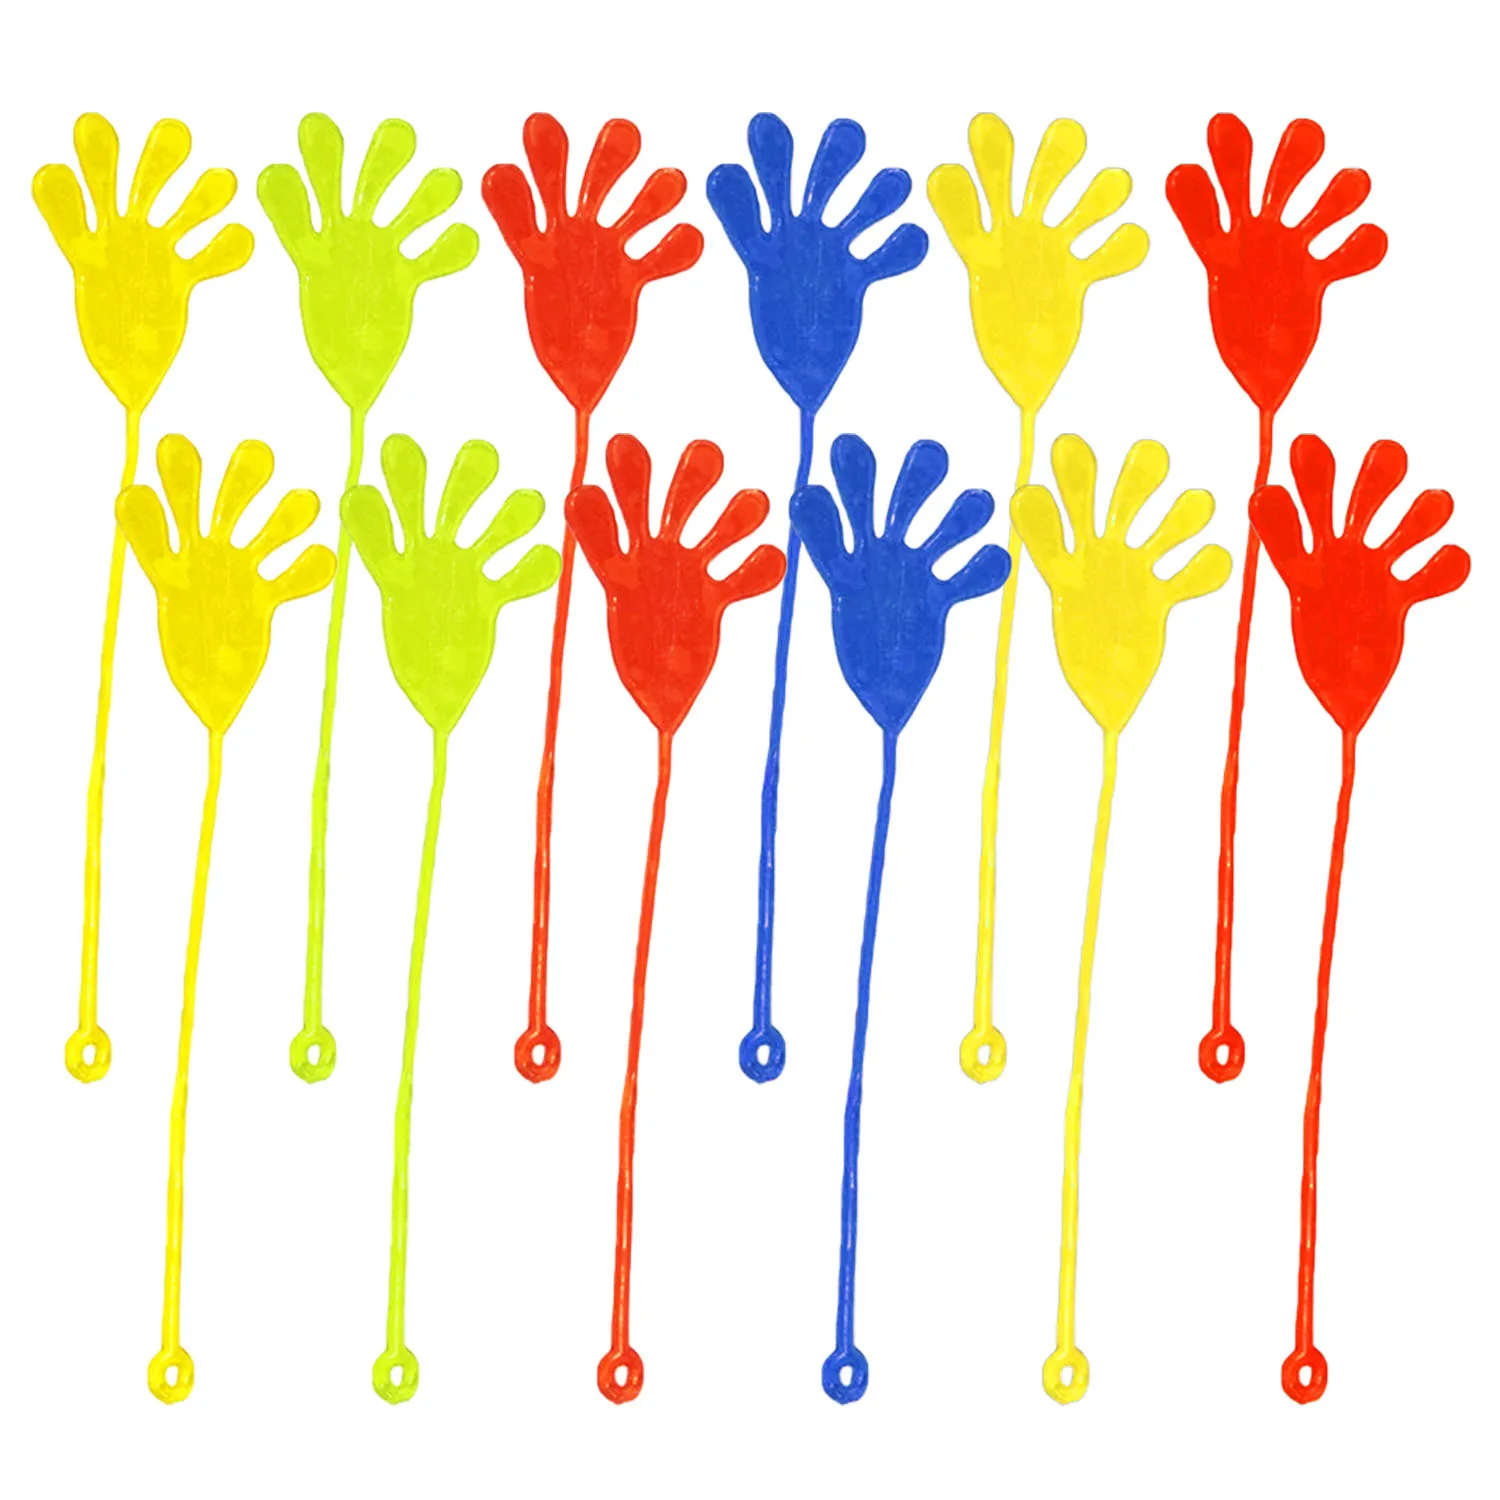 12 шт. мини-липкие руки Желе Палец игрушки для детей Вечеринка Сувениры дни рождения Новогодний подарок случайный цвет